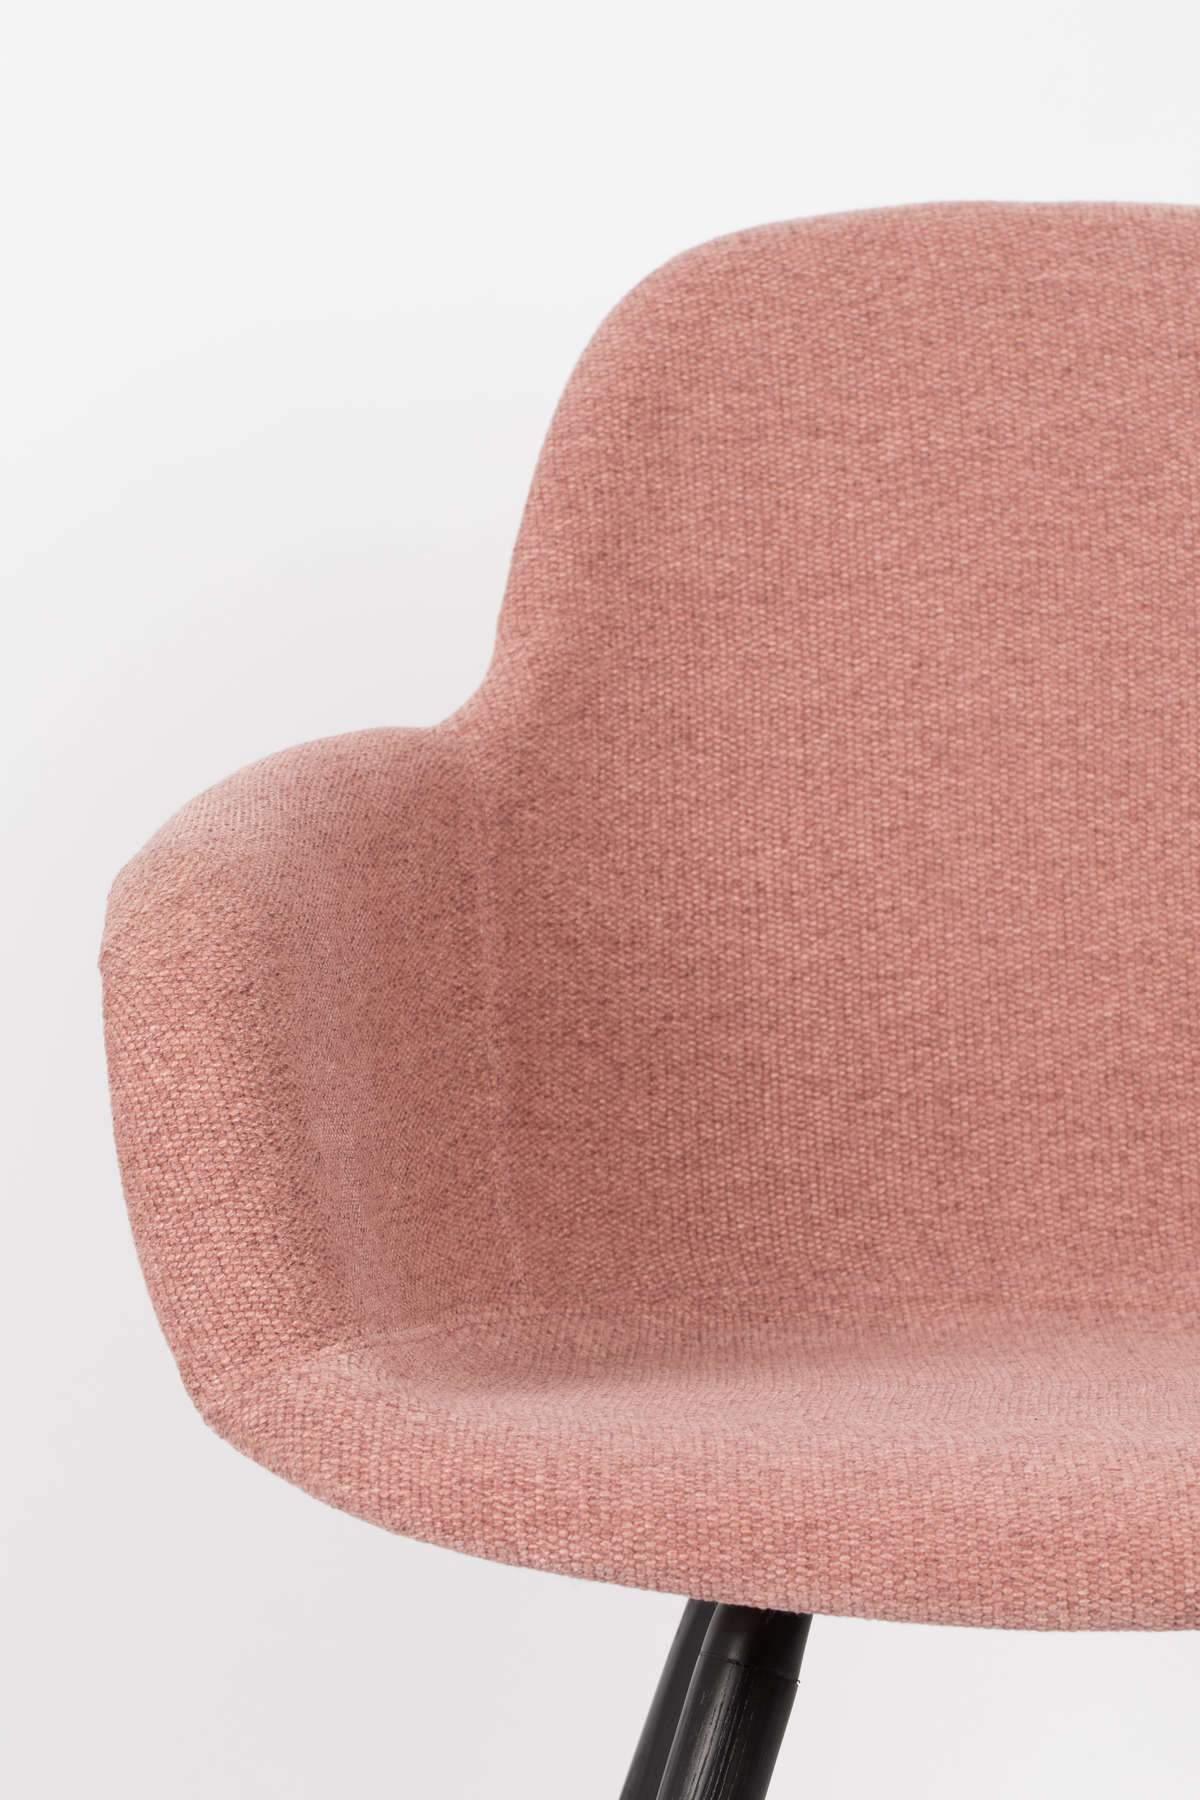 Krzesło z podłokietnikami ALBERT KUIP różowy Zuiver    Eye on Design